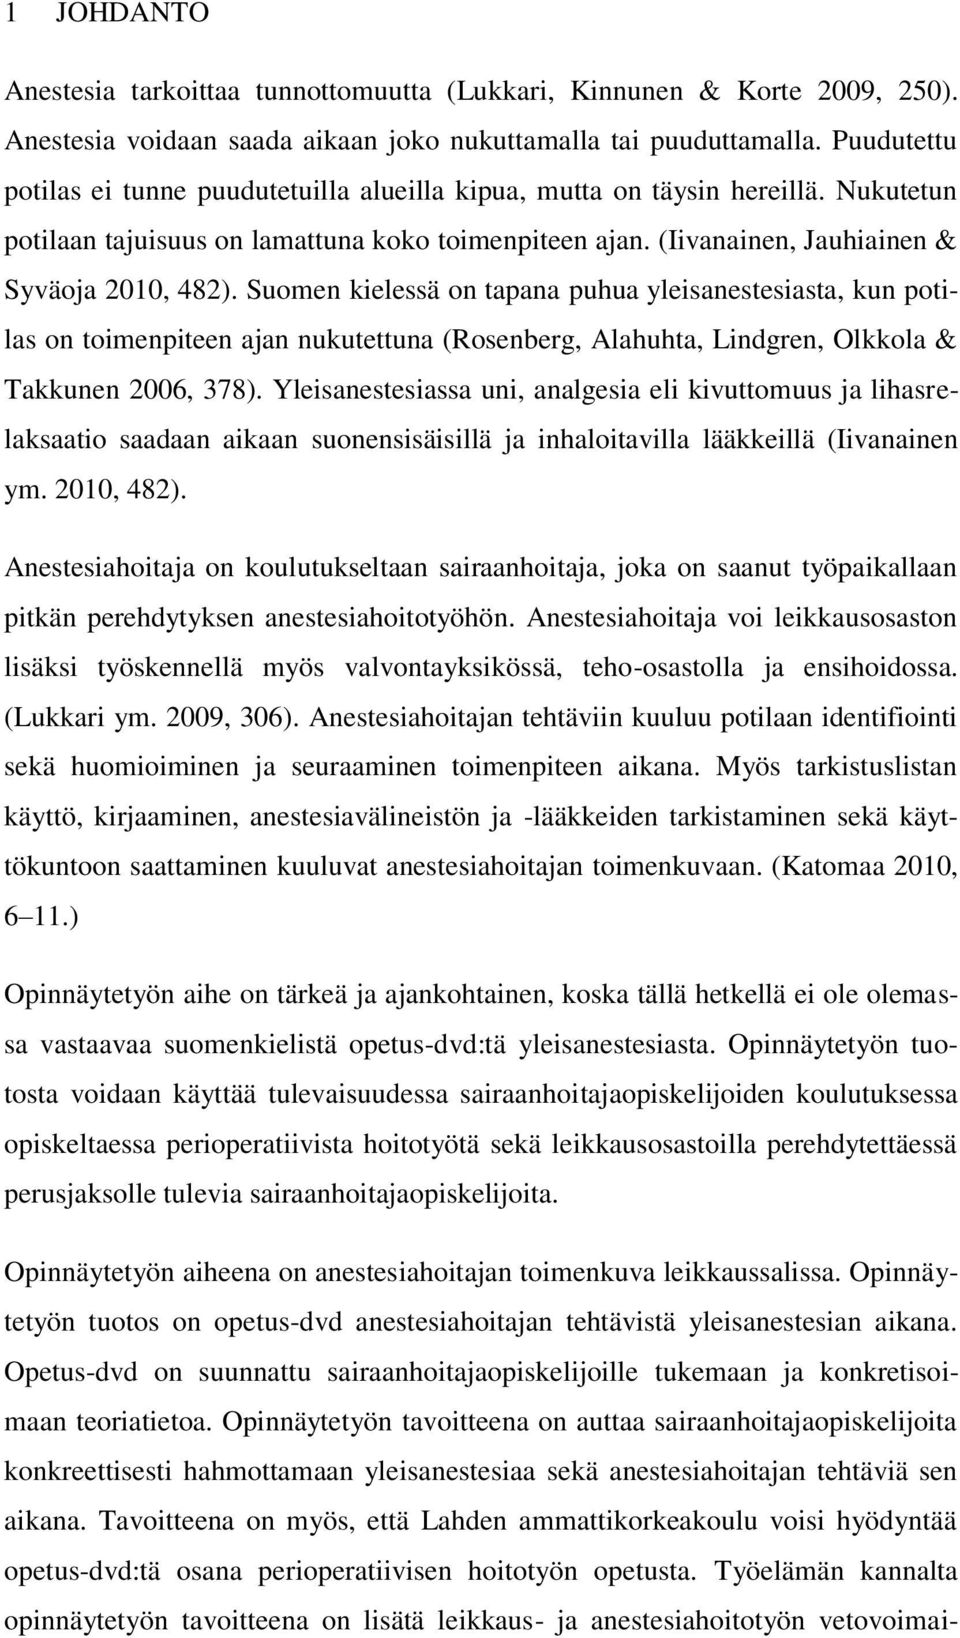 Suomen kielessä on tapana puhua yleisanestesiasta, kun potilas on toimenpiteen ajan nukutettuna (Rosenberg, Alahuhta, Lindgren, Olkkola & Takkunen 2006, 378).